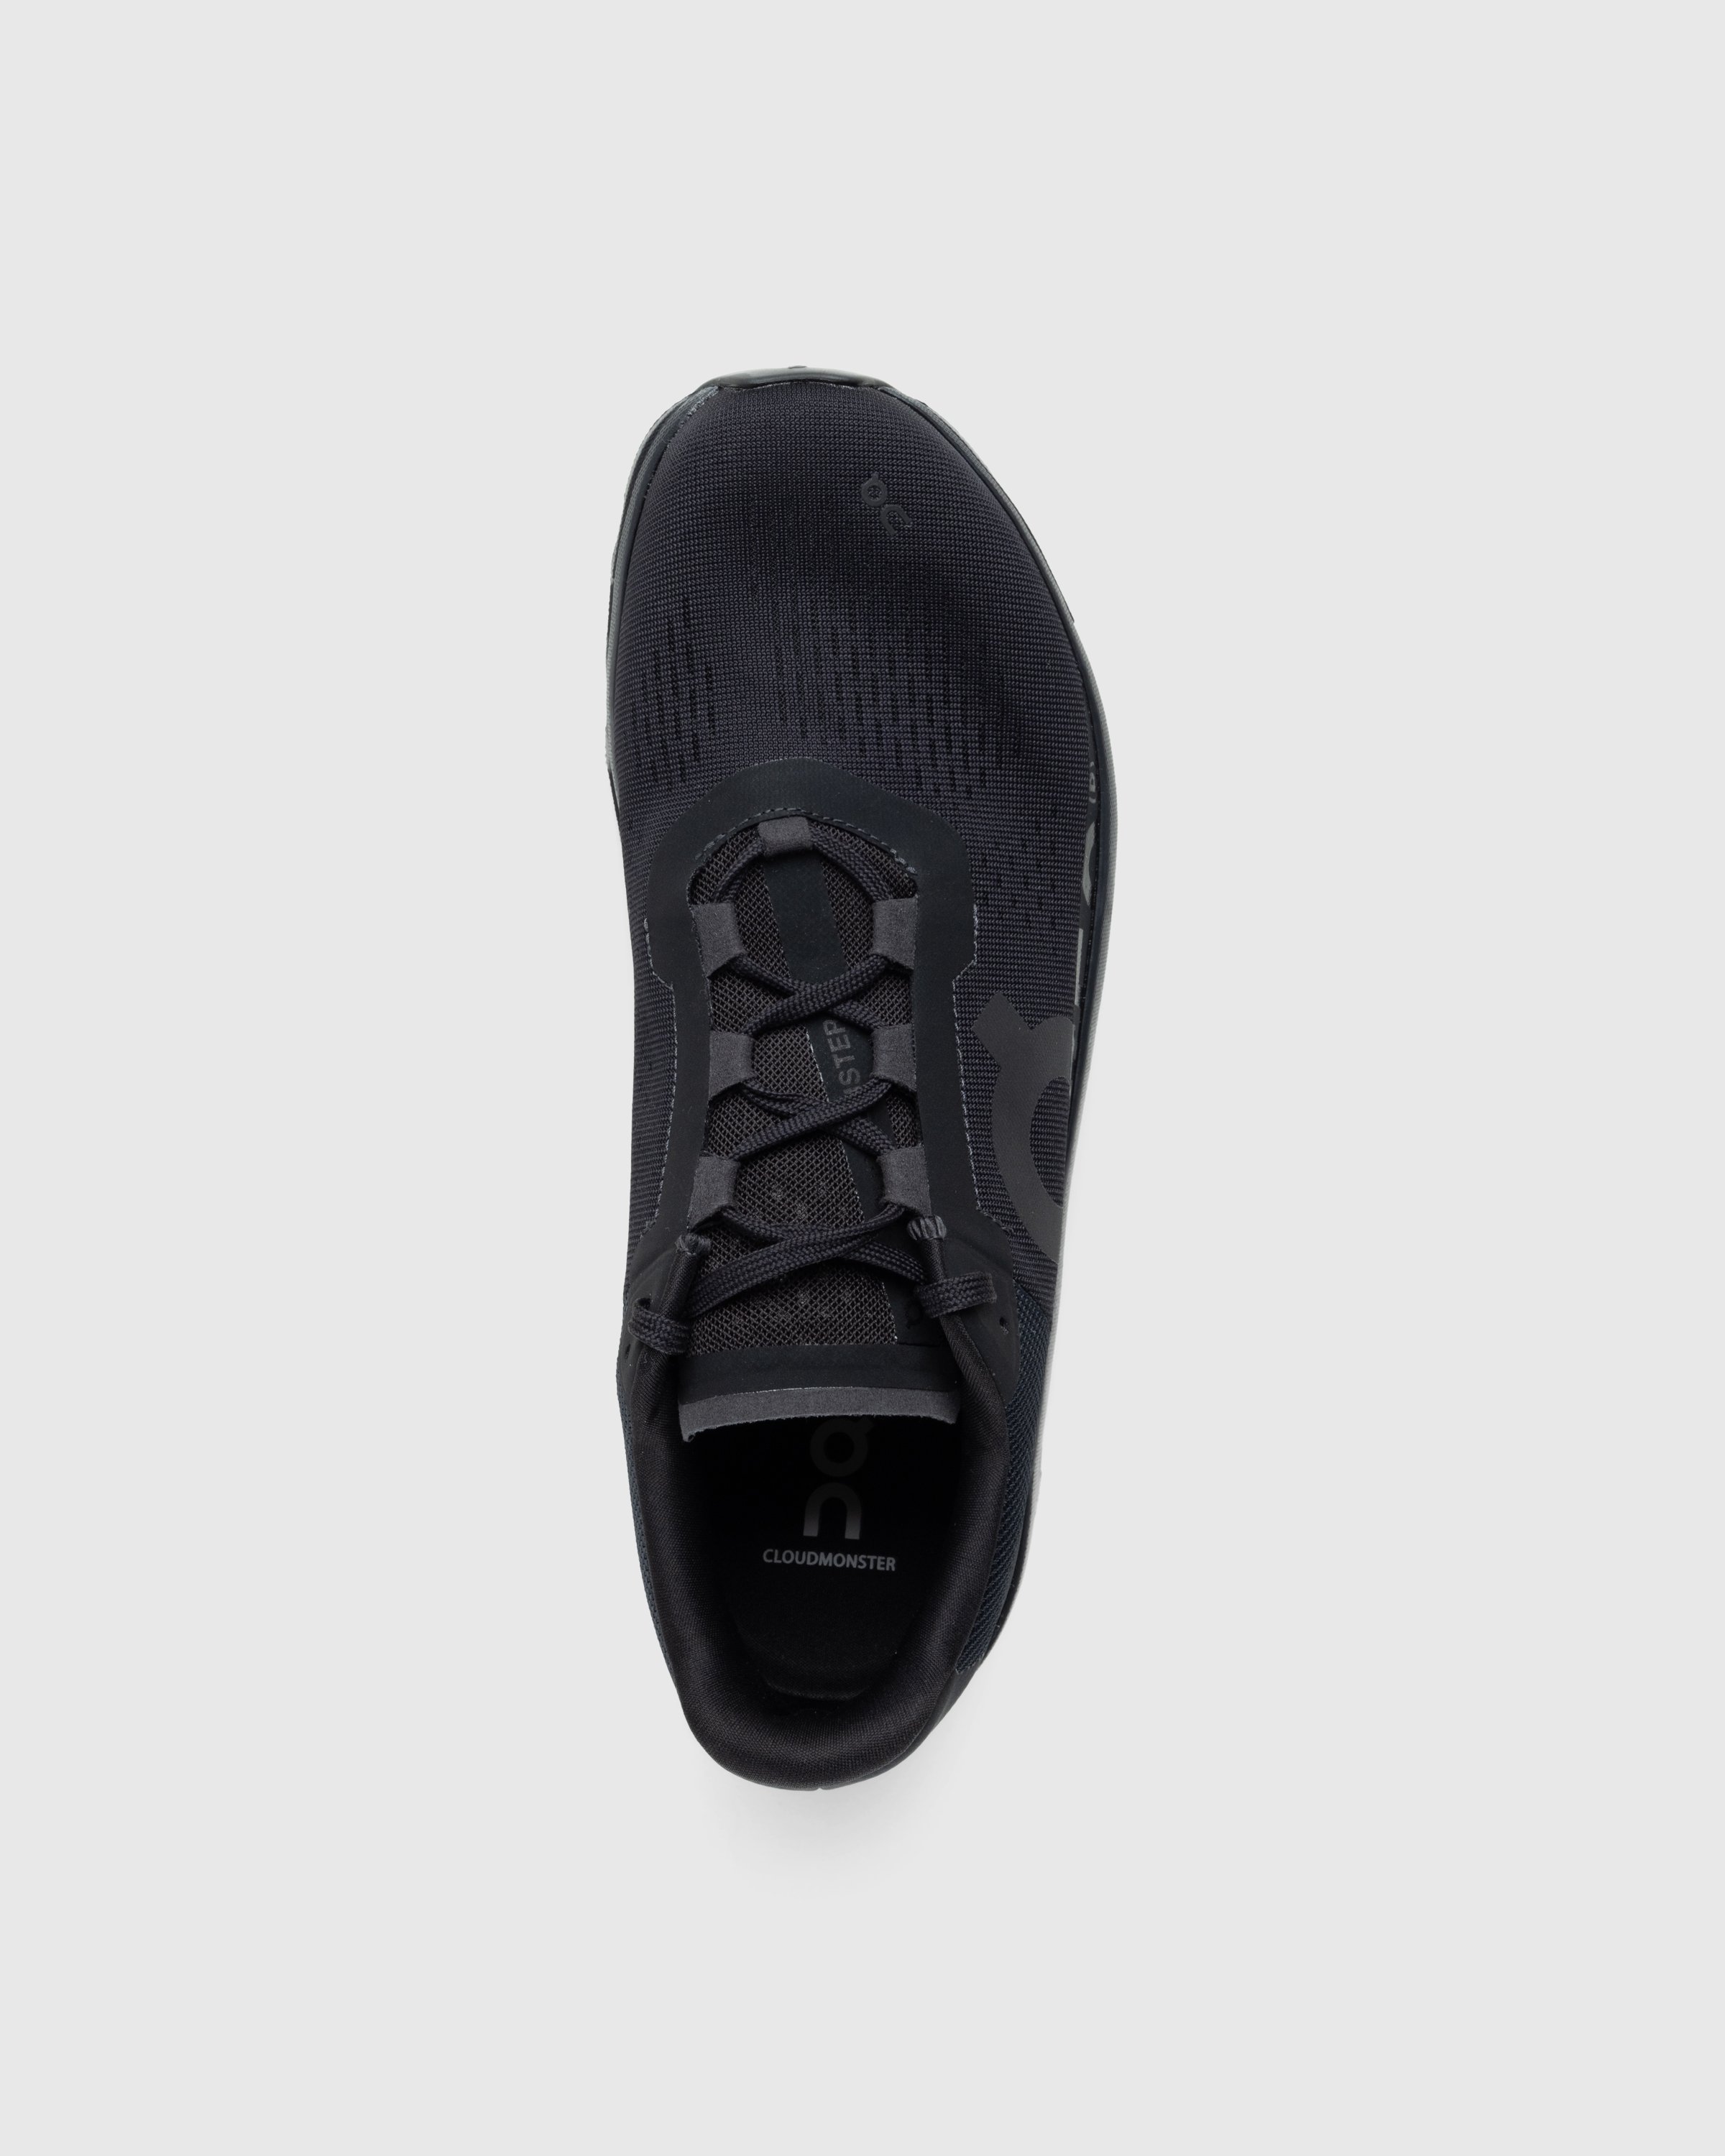 On - PR Cloudmonster 1 M - Footwear - Black - Image 5